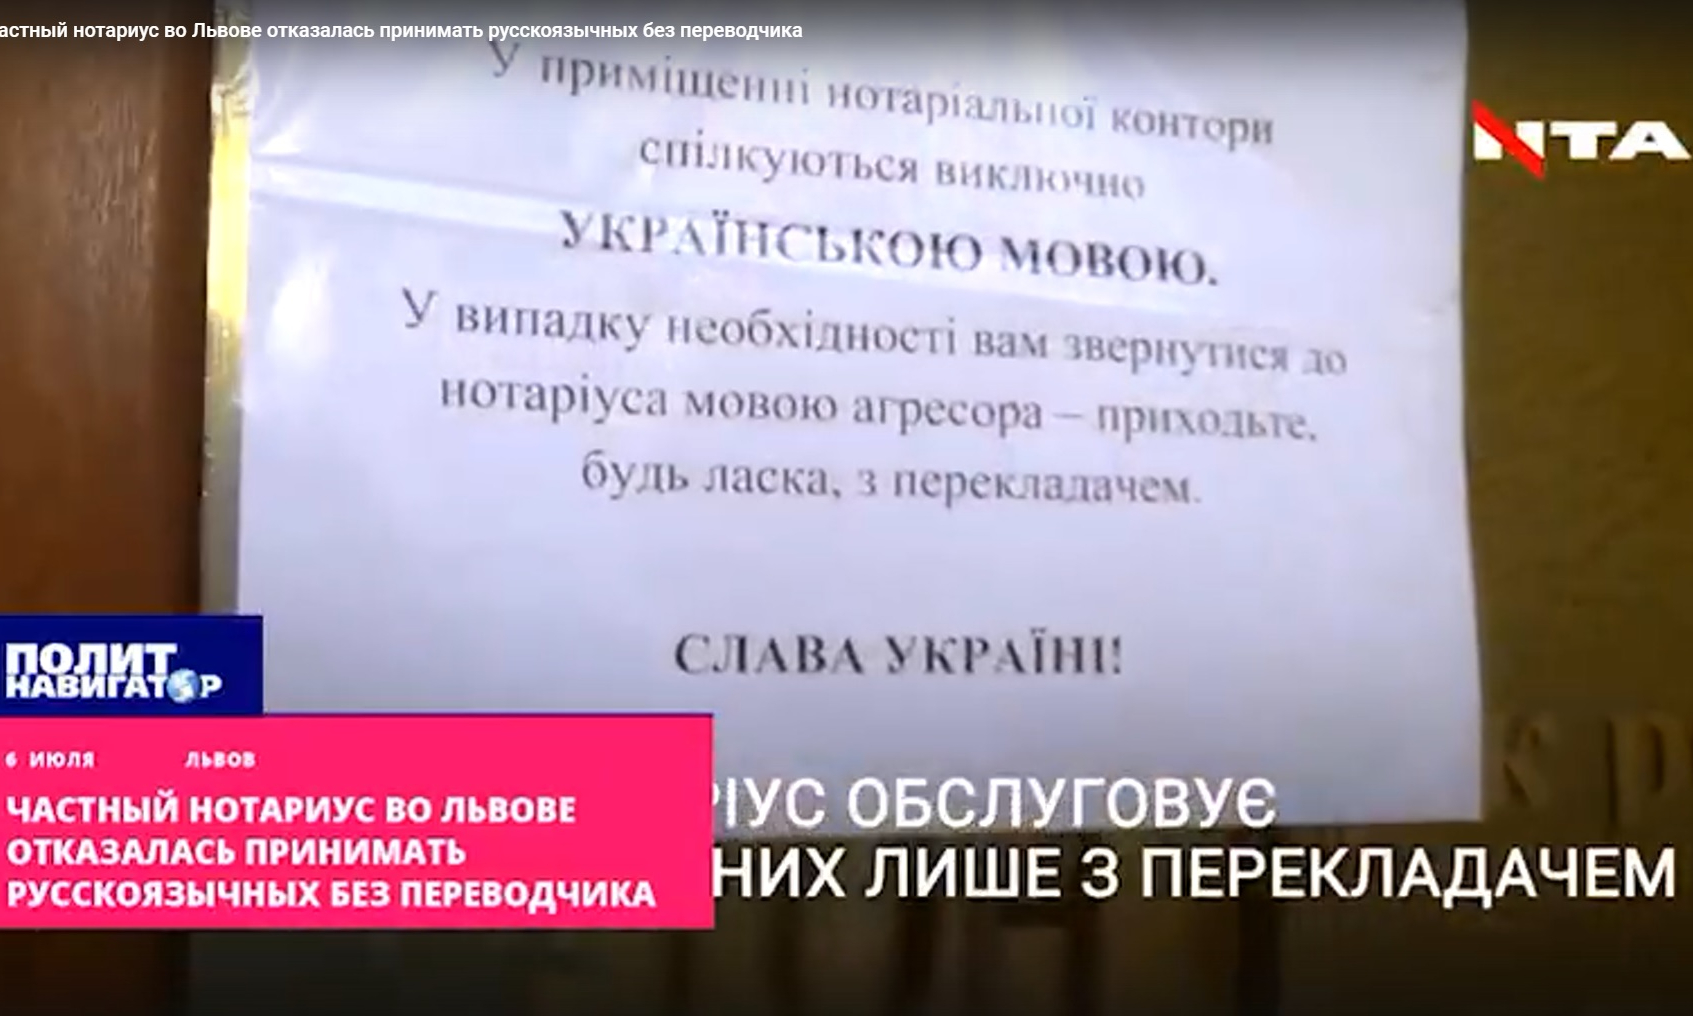 Украинская нотариус отказалась принимать русскоязычных без переводчика